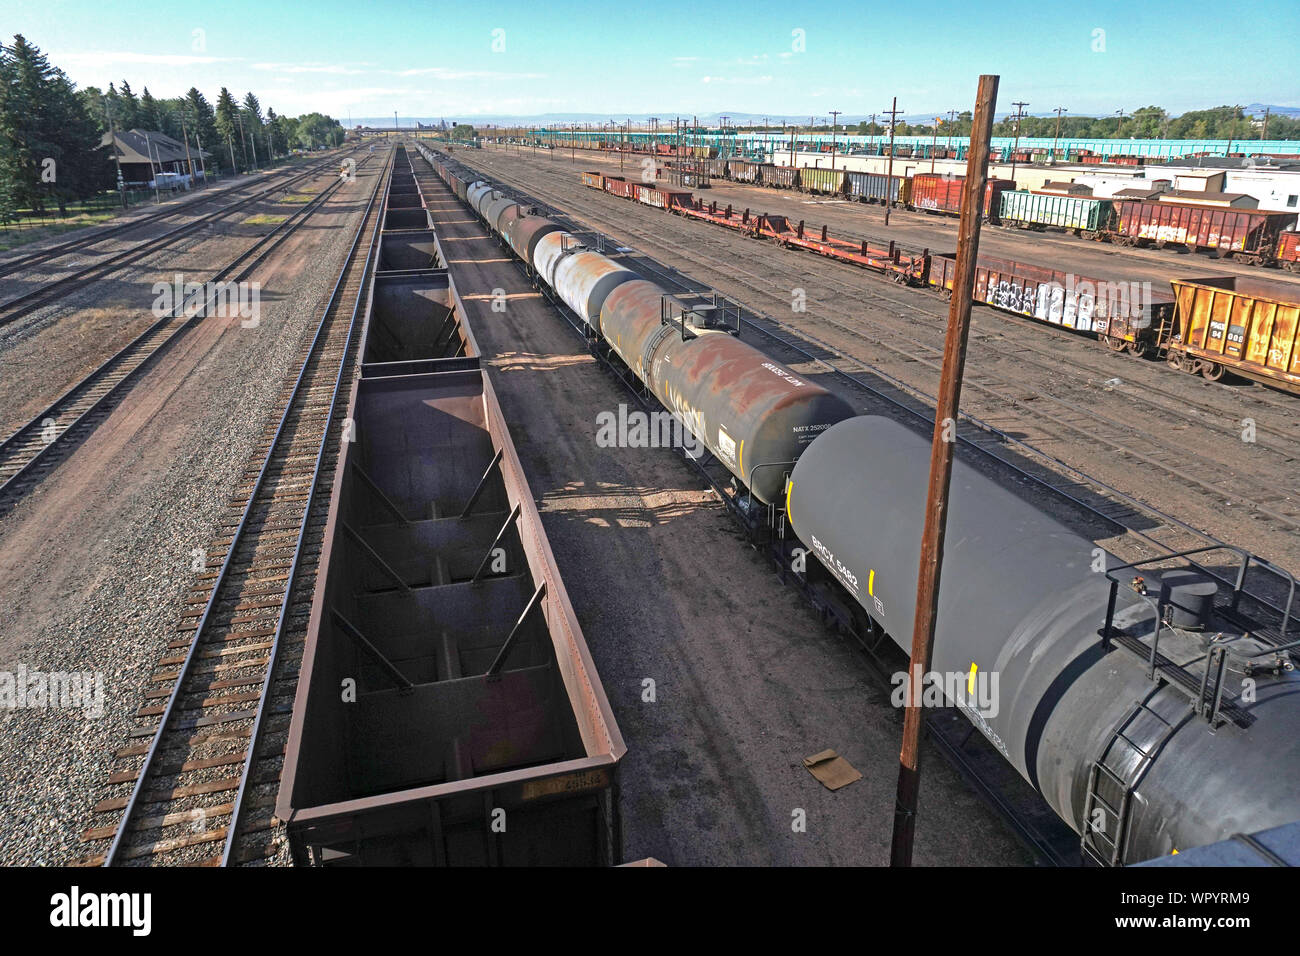 Ferrovia vuota del carbone auto e ferrovia serbatoio vetture della Union Pacific Rail yard in Laramie, Wyoming foto di Dennis Brack Foto Stock